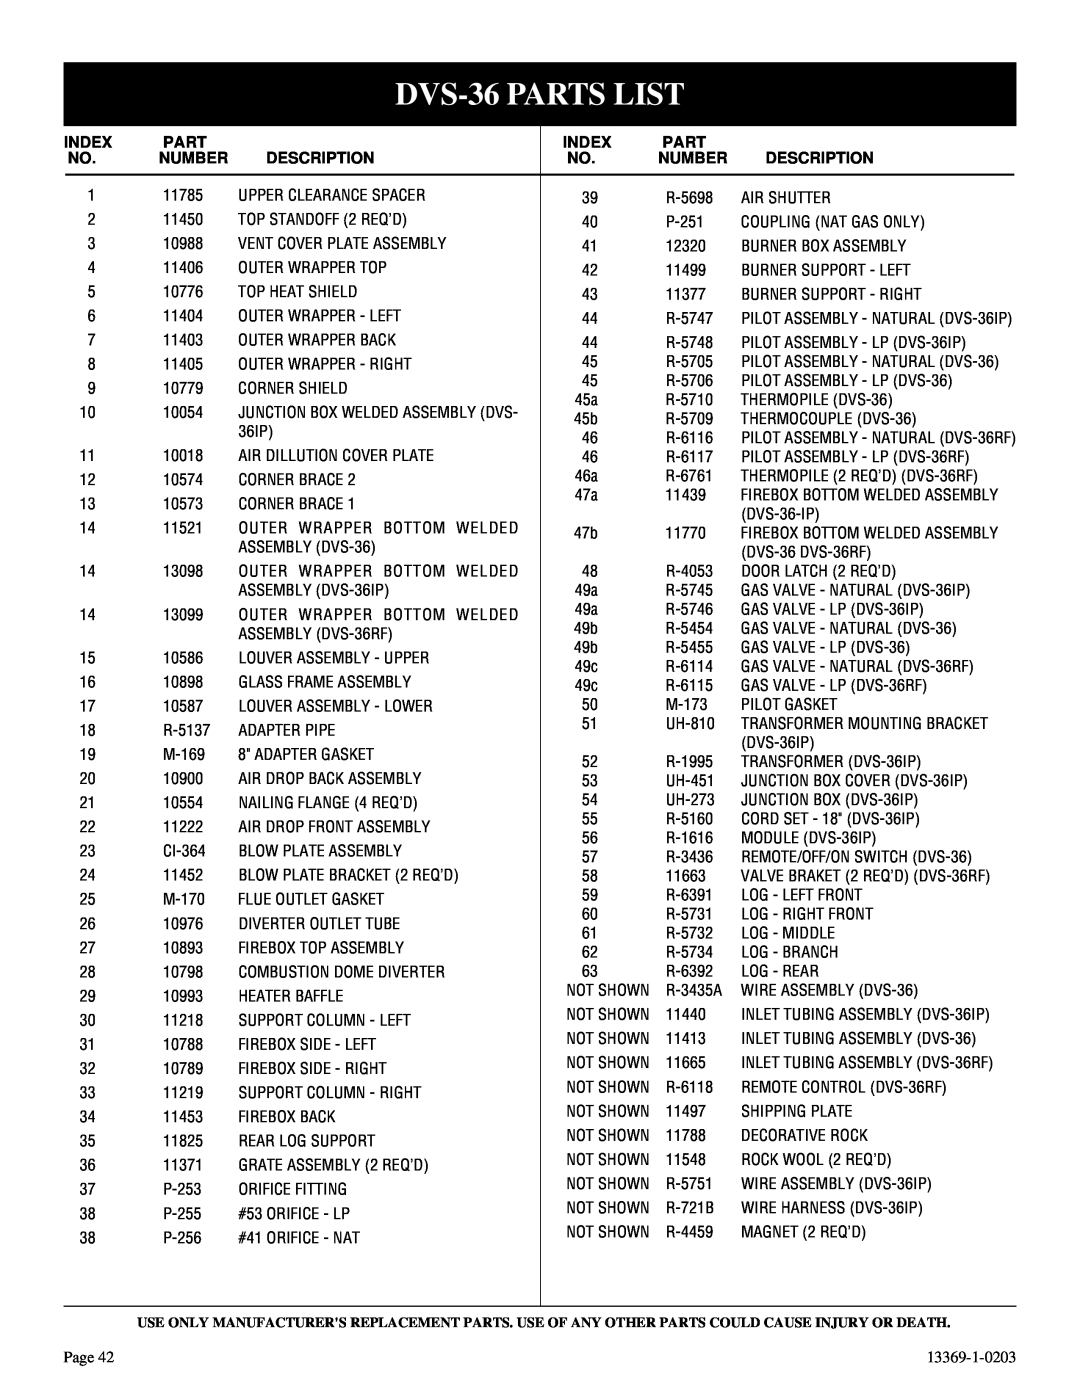 DVS 30-2 installation instructions DVS-36PARTS LIST, Index, Part, Number, Description 